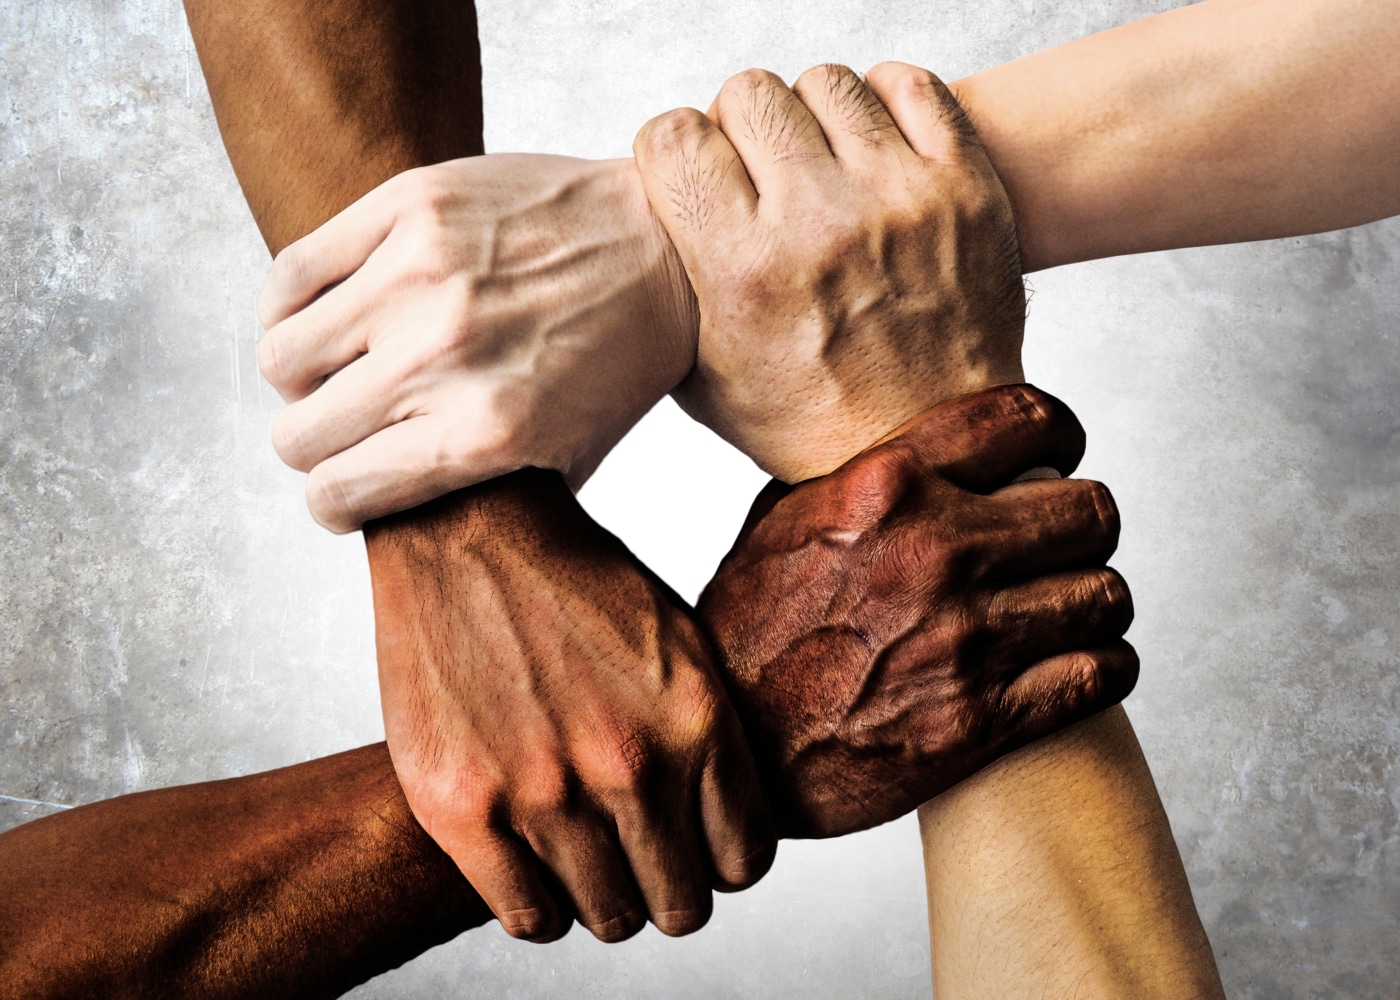 Convención Internacional sobre la Eliminación de todas las Formas de Discriminación Racial